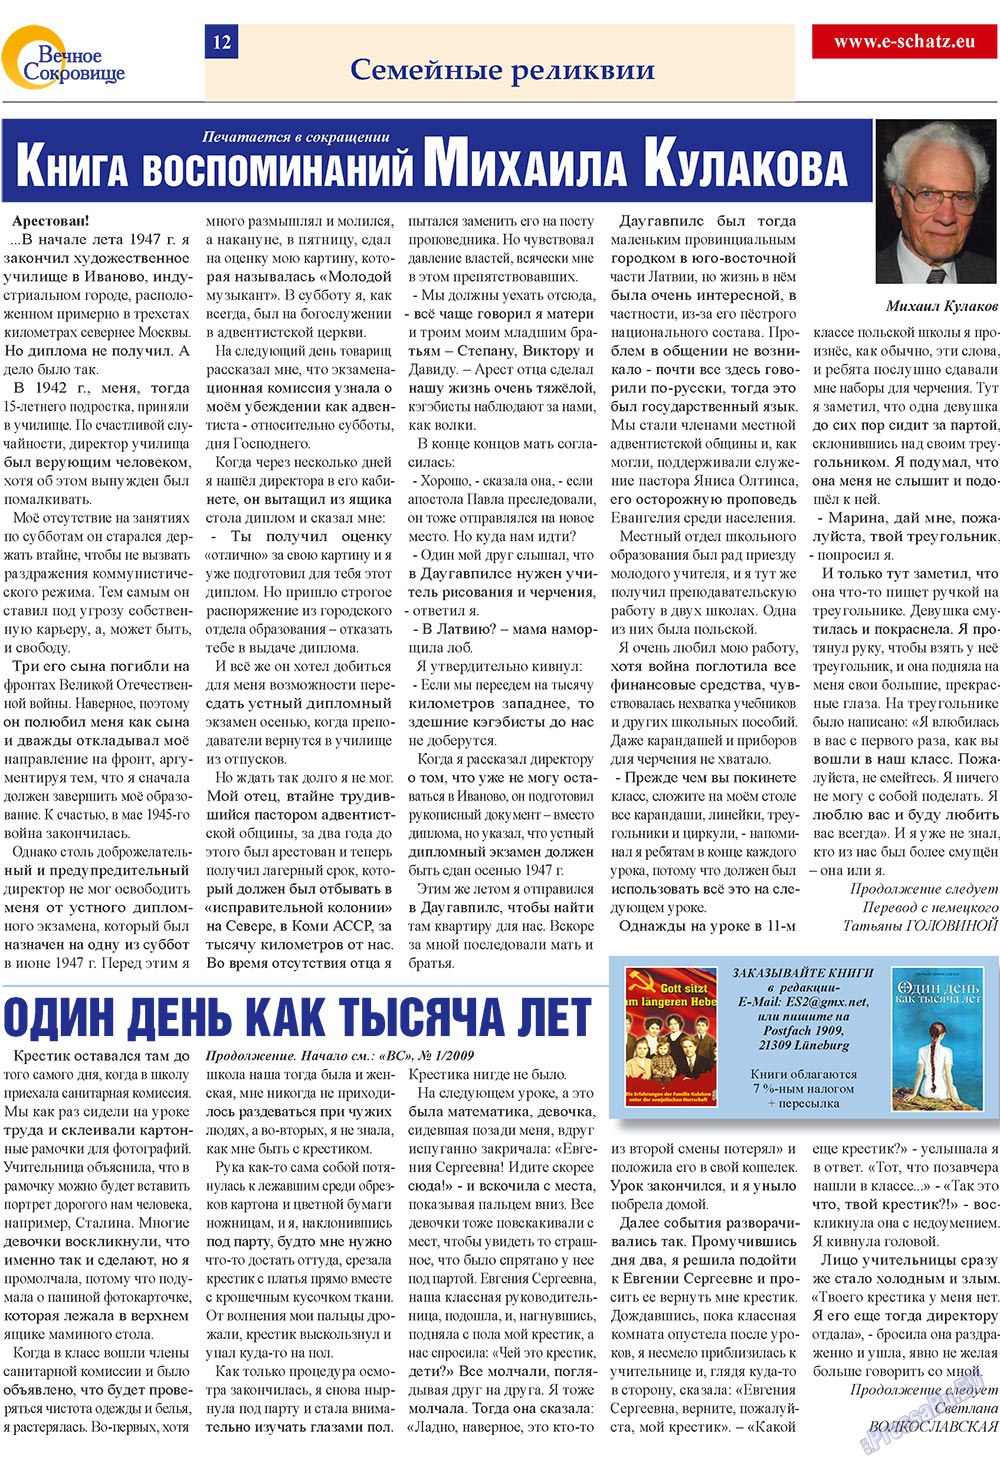 Вечное сокровище, газета. 2009 №2 стр.12